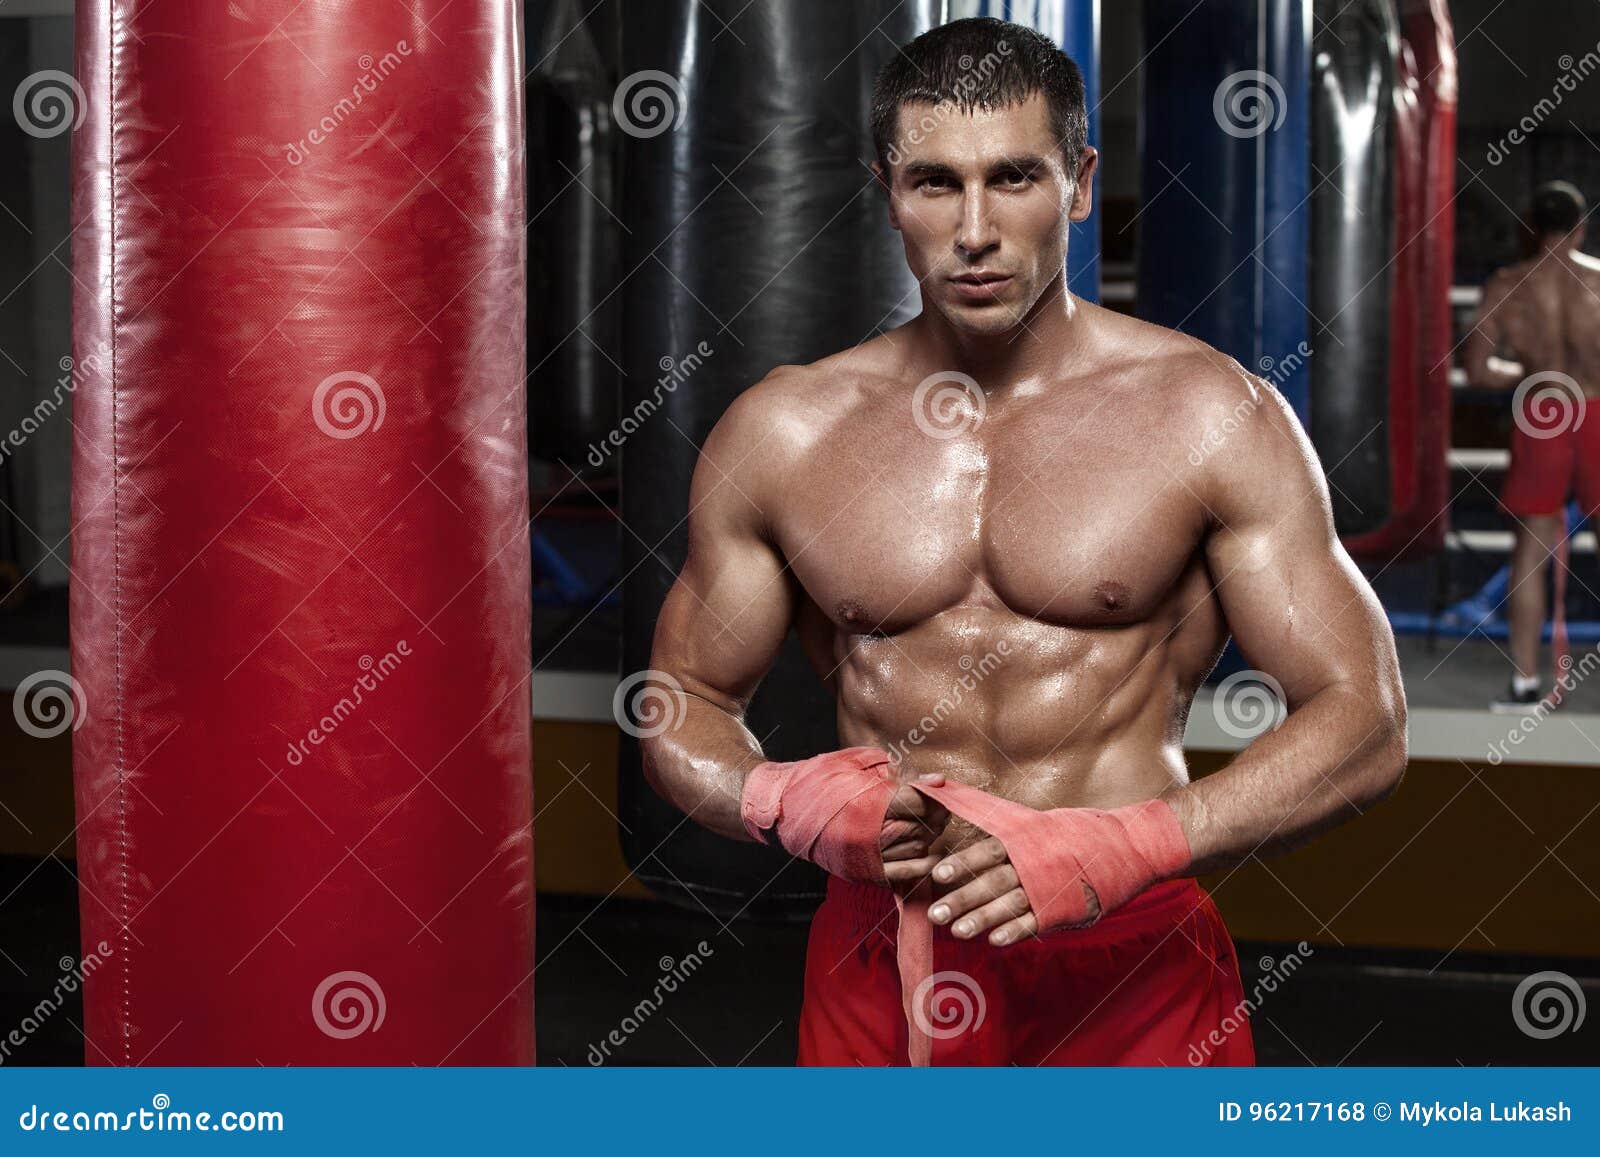 Male Desnudo Boxers